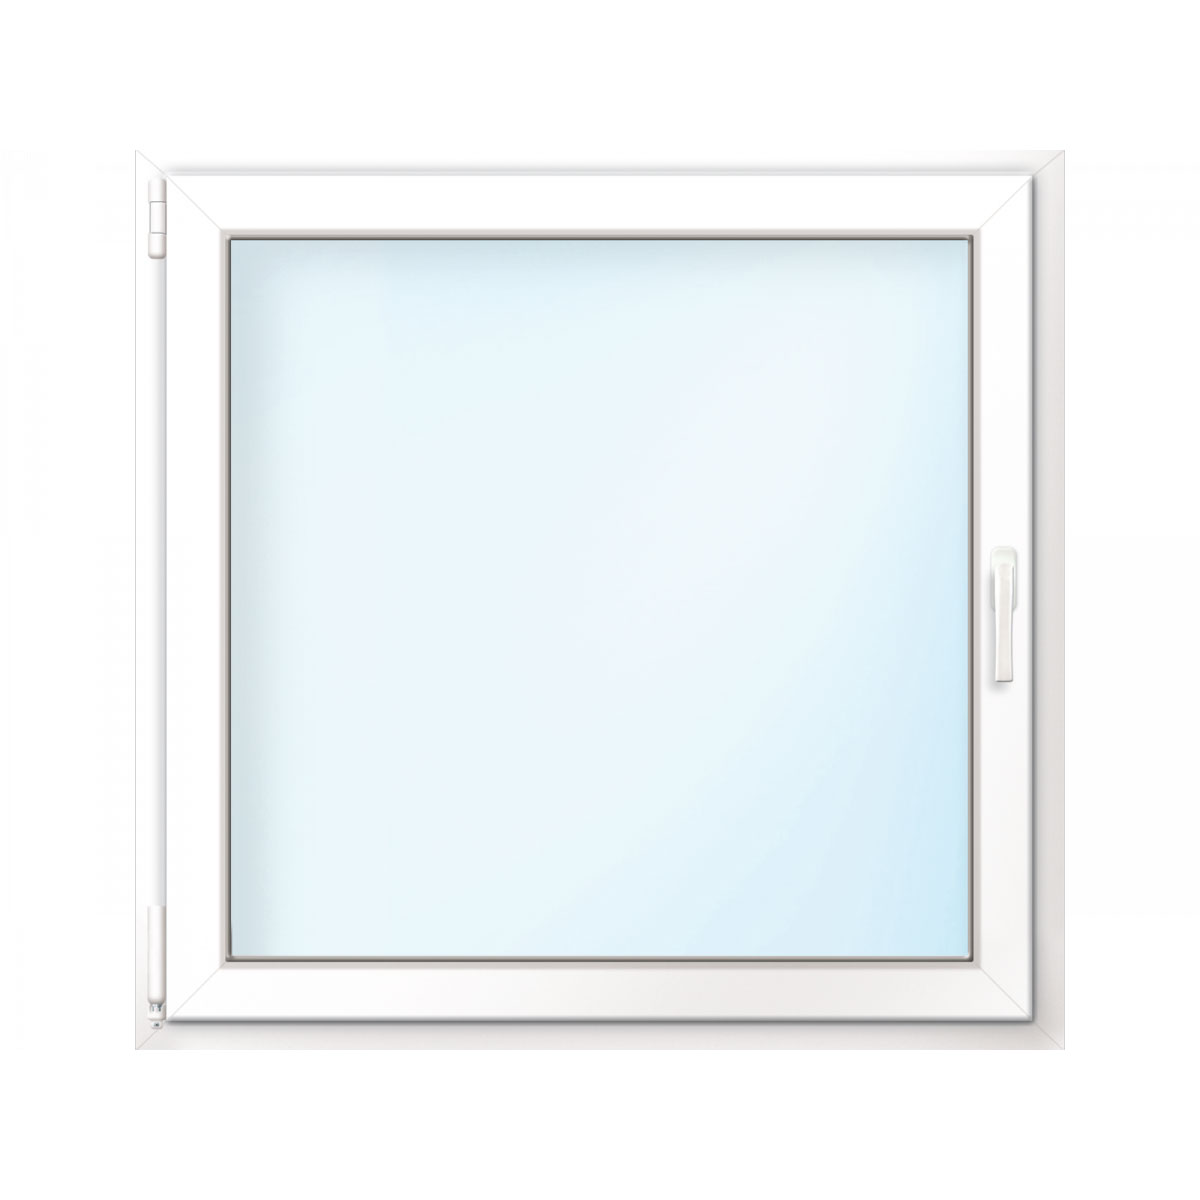 Wärmeschutz-Fenster „76/3“, 120x120 cm, weiß, Anschlag links